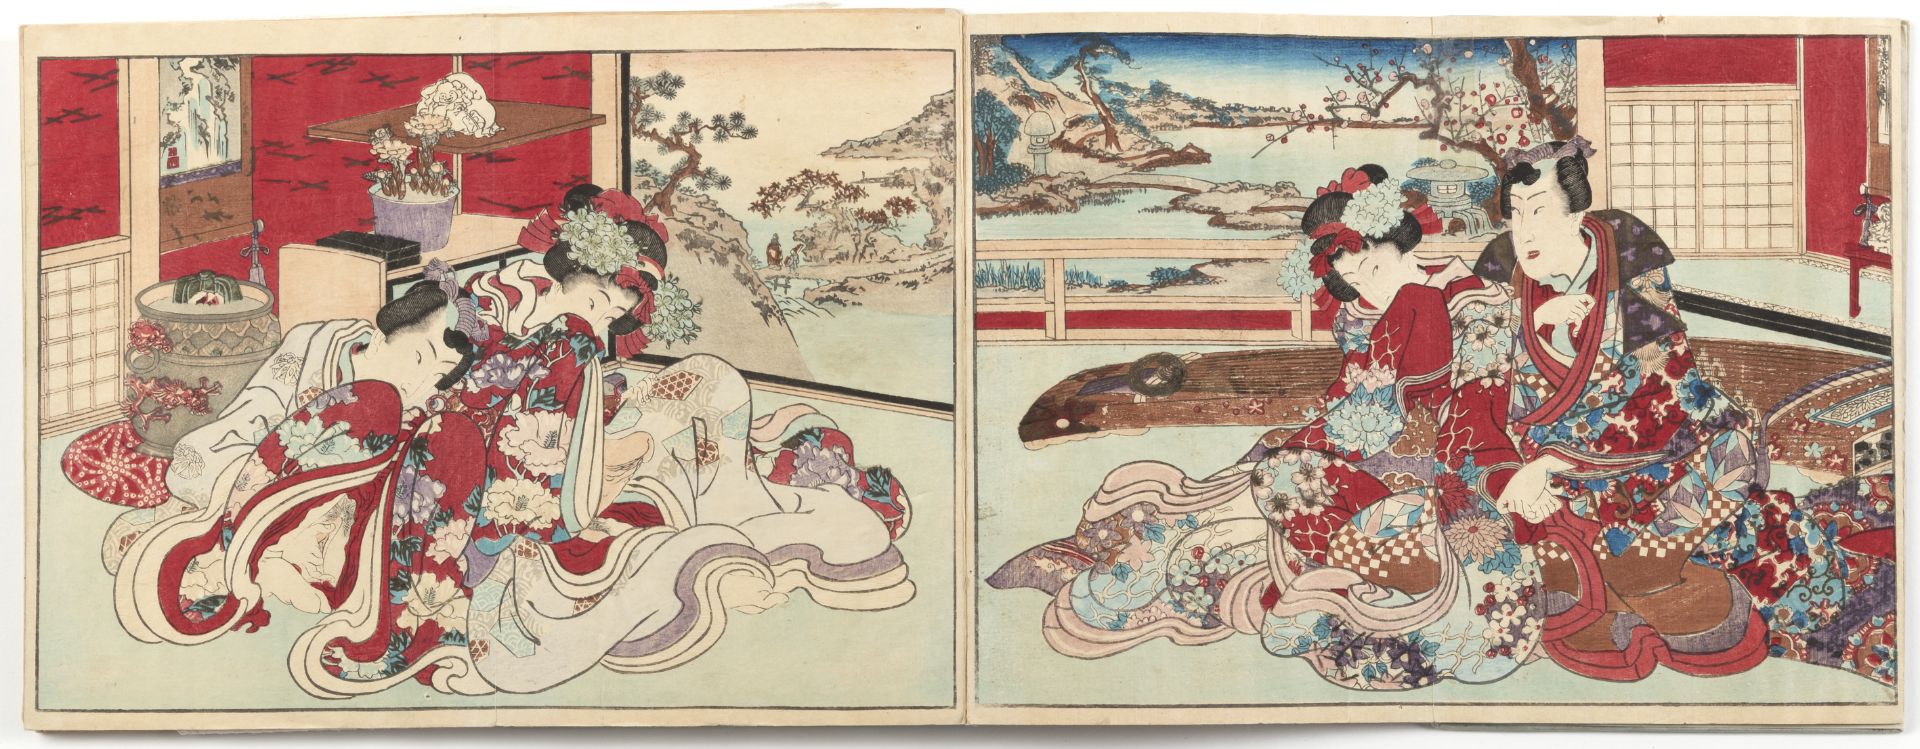 AN ALBUM OF JAPANESE SHUNGA PRINTS WITH TITLE 'AZUMA GENJI ' - Image 4 of 5